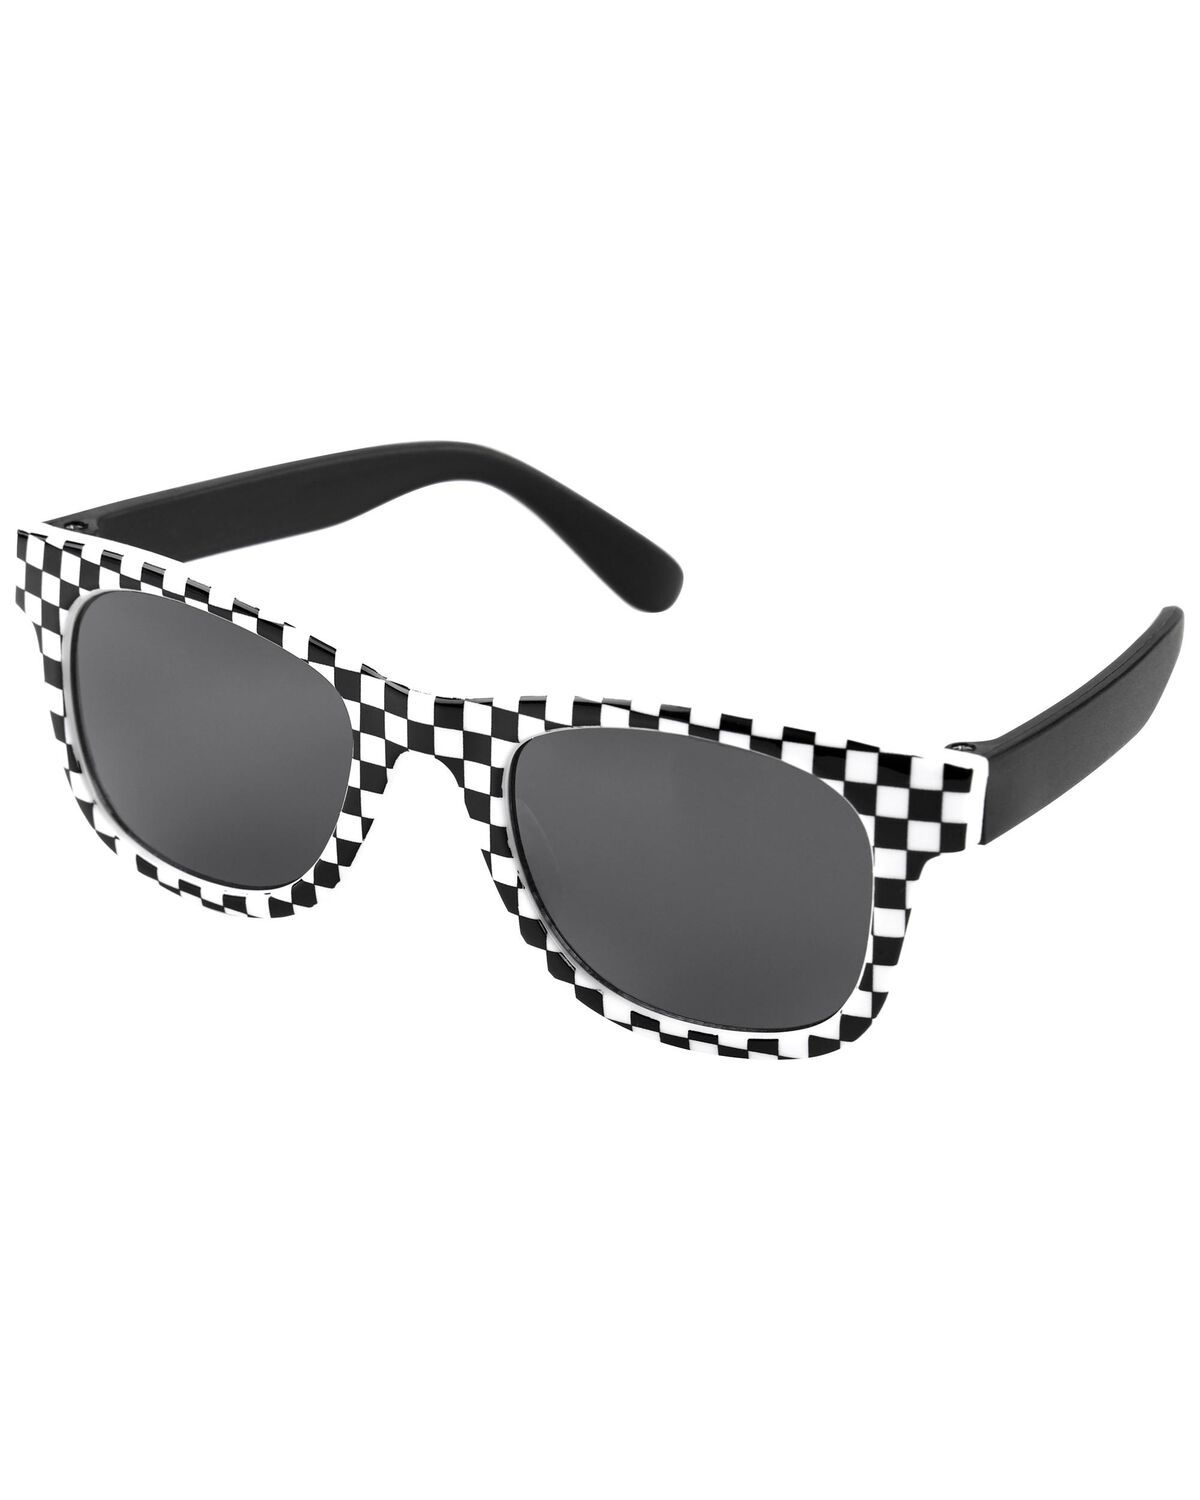 Black/White Baby Checker Sunglasses | carters.com | Carter's